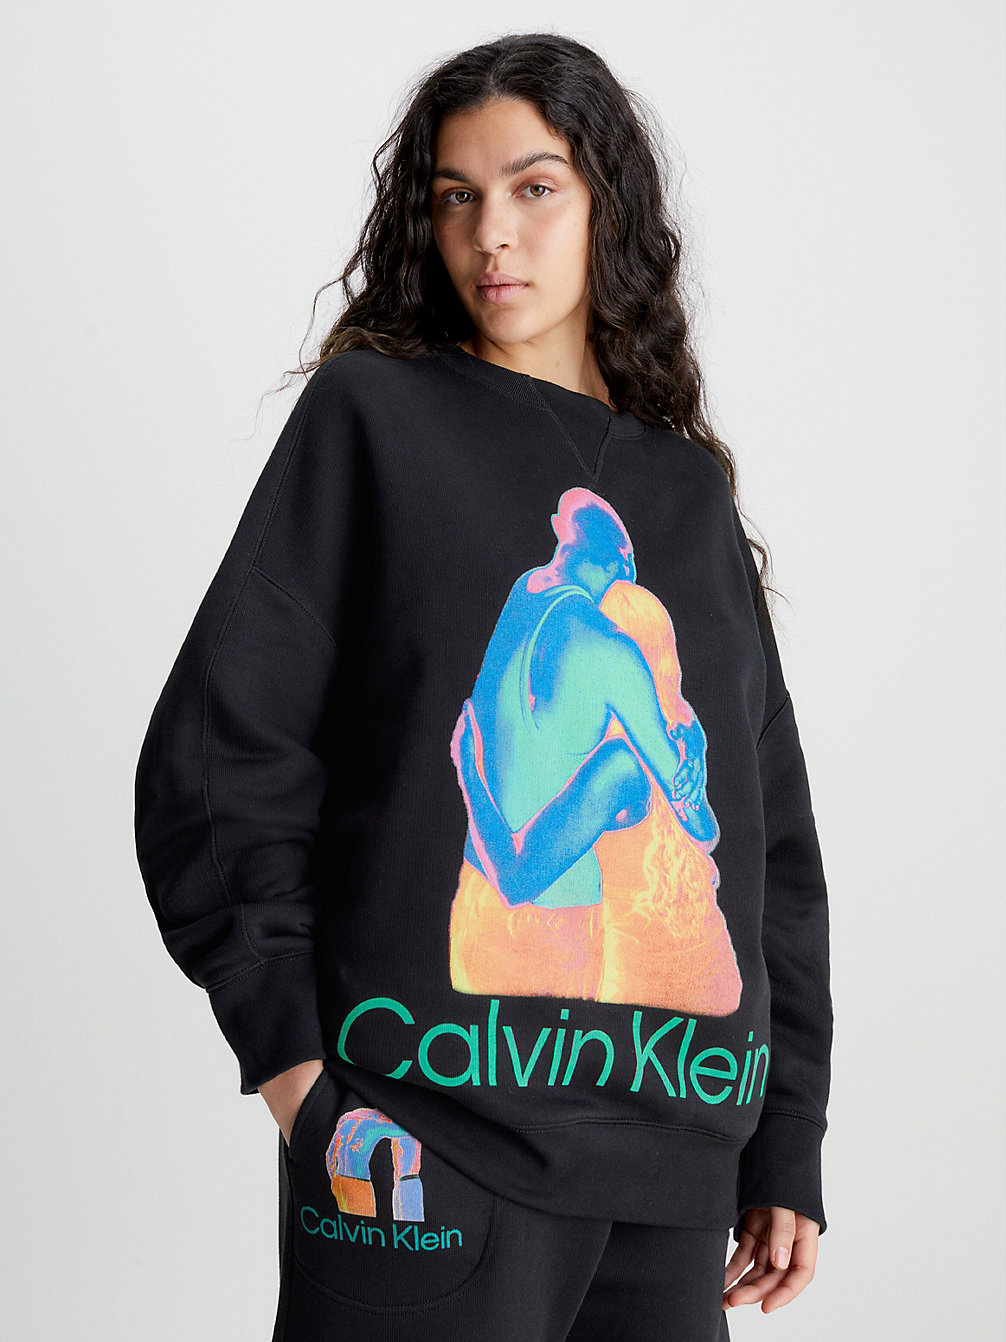 BLACK BEAUTY Unisex-Sweatshirt Mit Print – CK Standards undefined Herren Calvin Klein